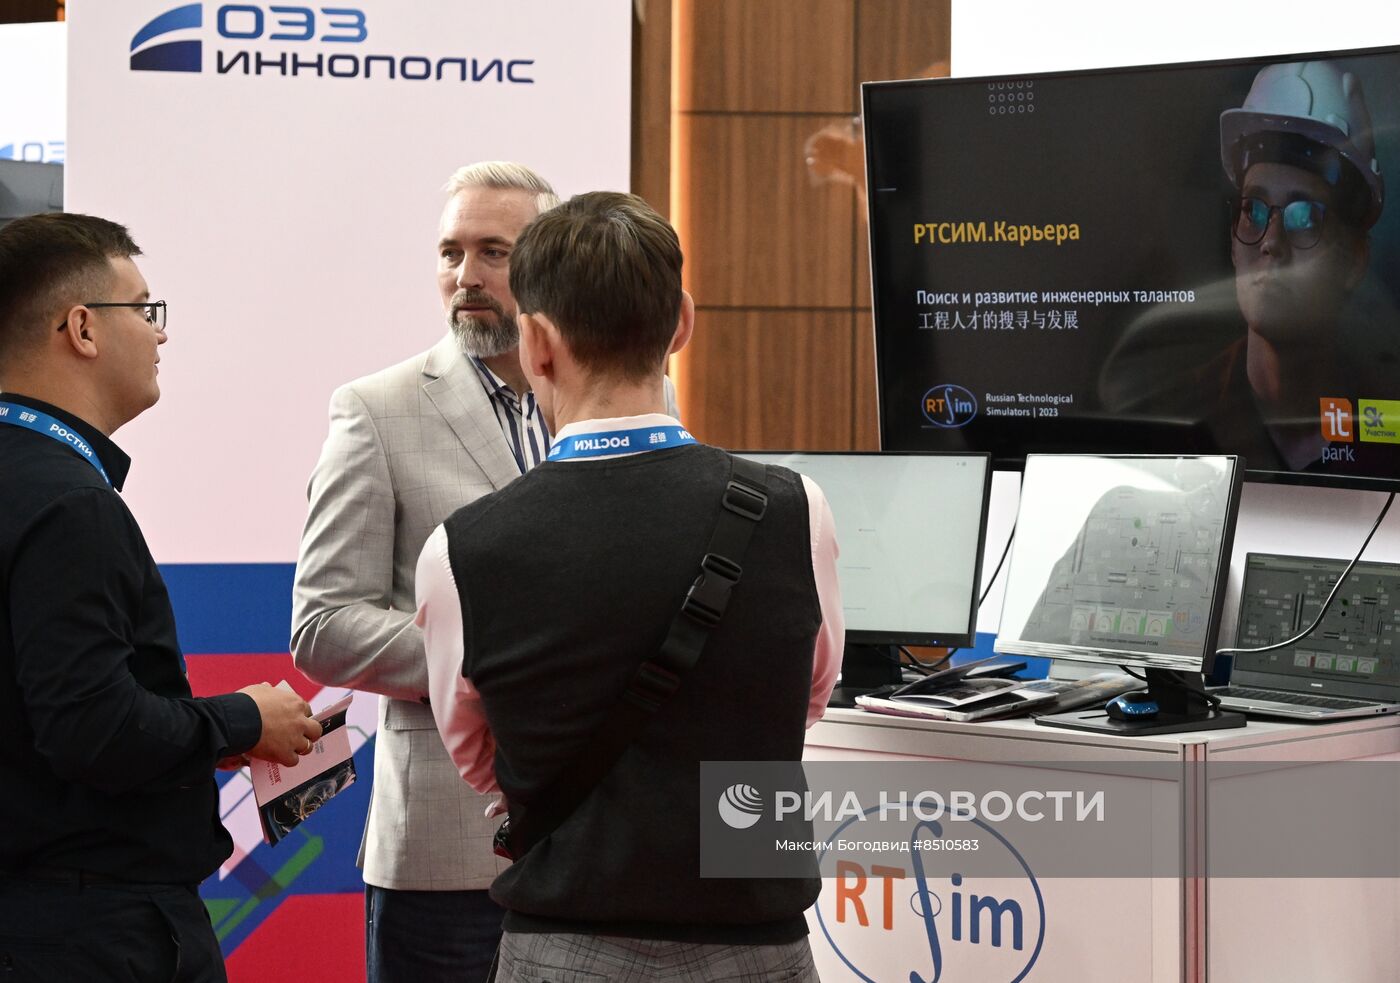 Международный бизнес-форум "Ростки" в Казани